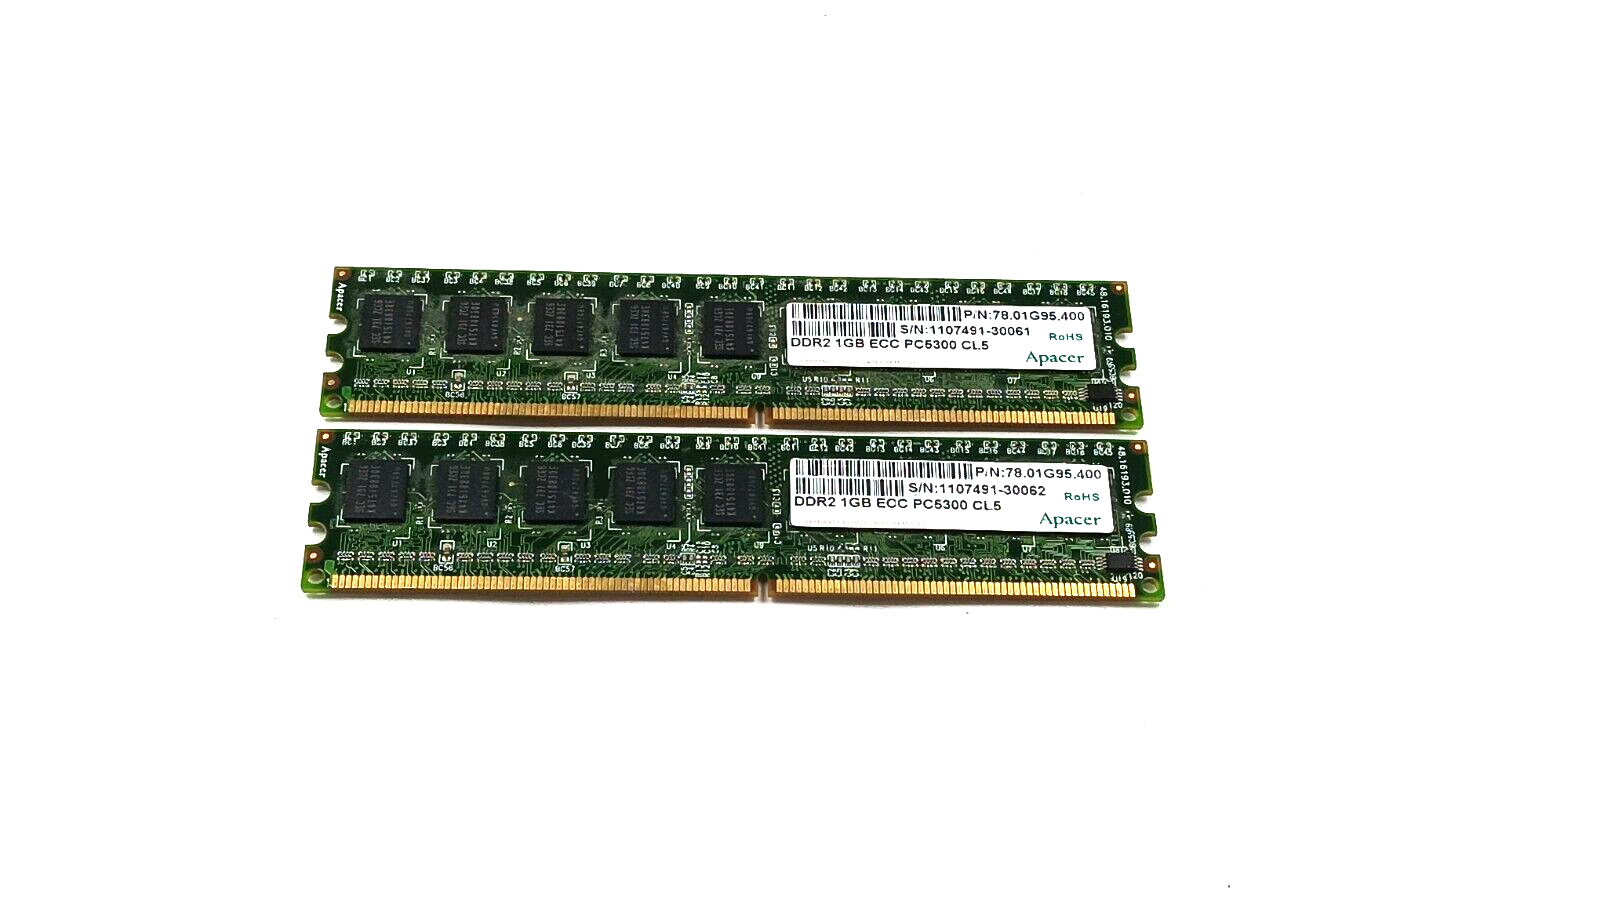 Apacer 2x1GB (2GB) 78.01G95.400 DDR2 1GB PC5300 ECC Registered RAM Memory Kit